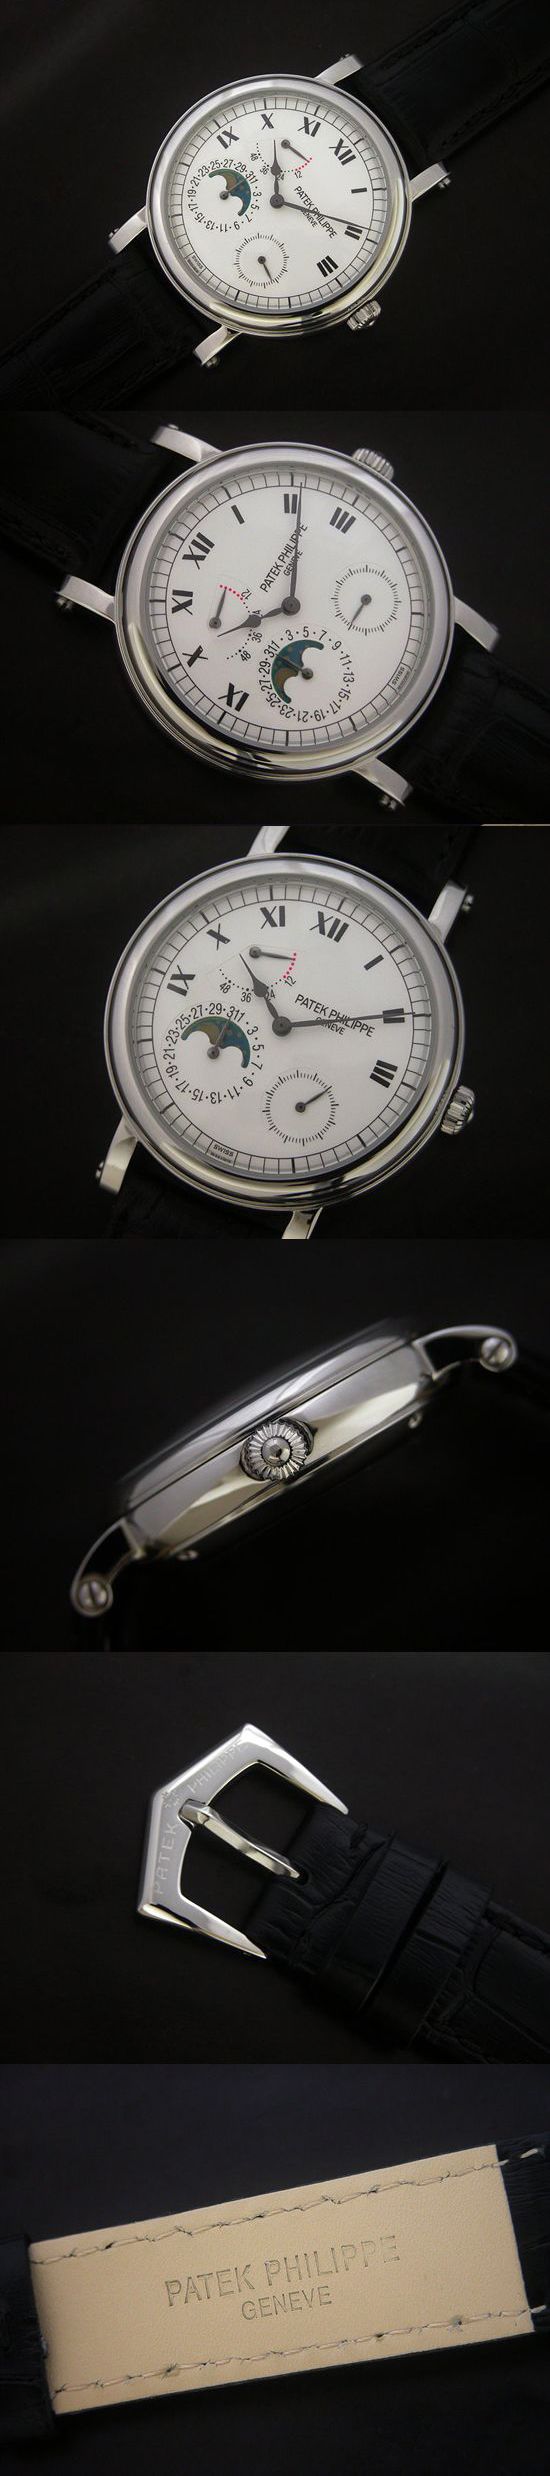 おしゃれなブランド時計がパテックフィリップ-コンプリケーション-PATEK PHILIPPE-5054P-男性用を提供します.